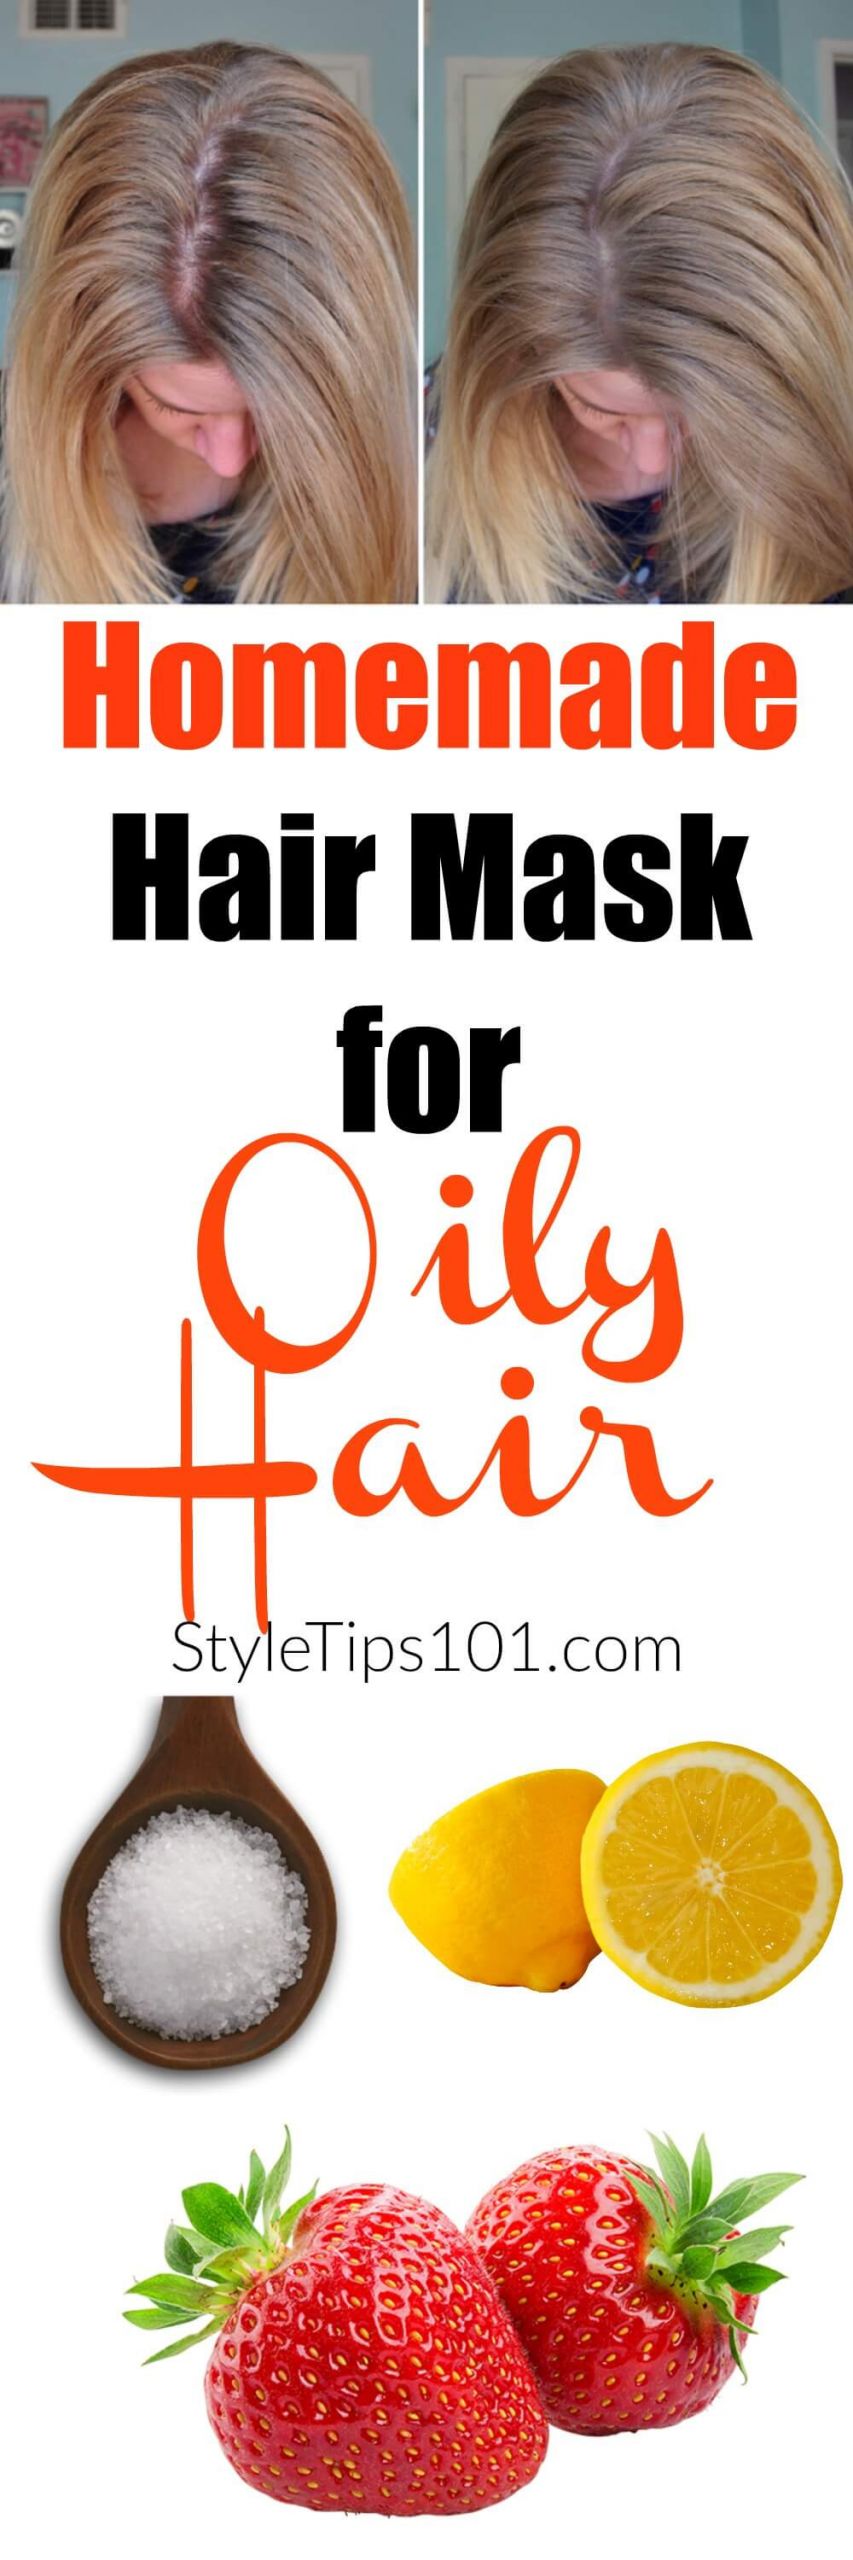 DIY Hair Masks For Oily Hair
 DIY Hair Mask for Oily Hair